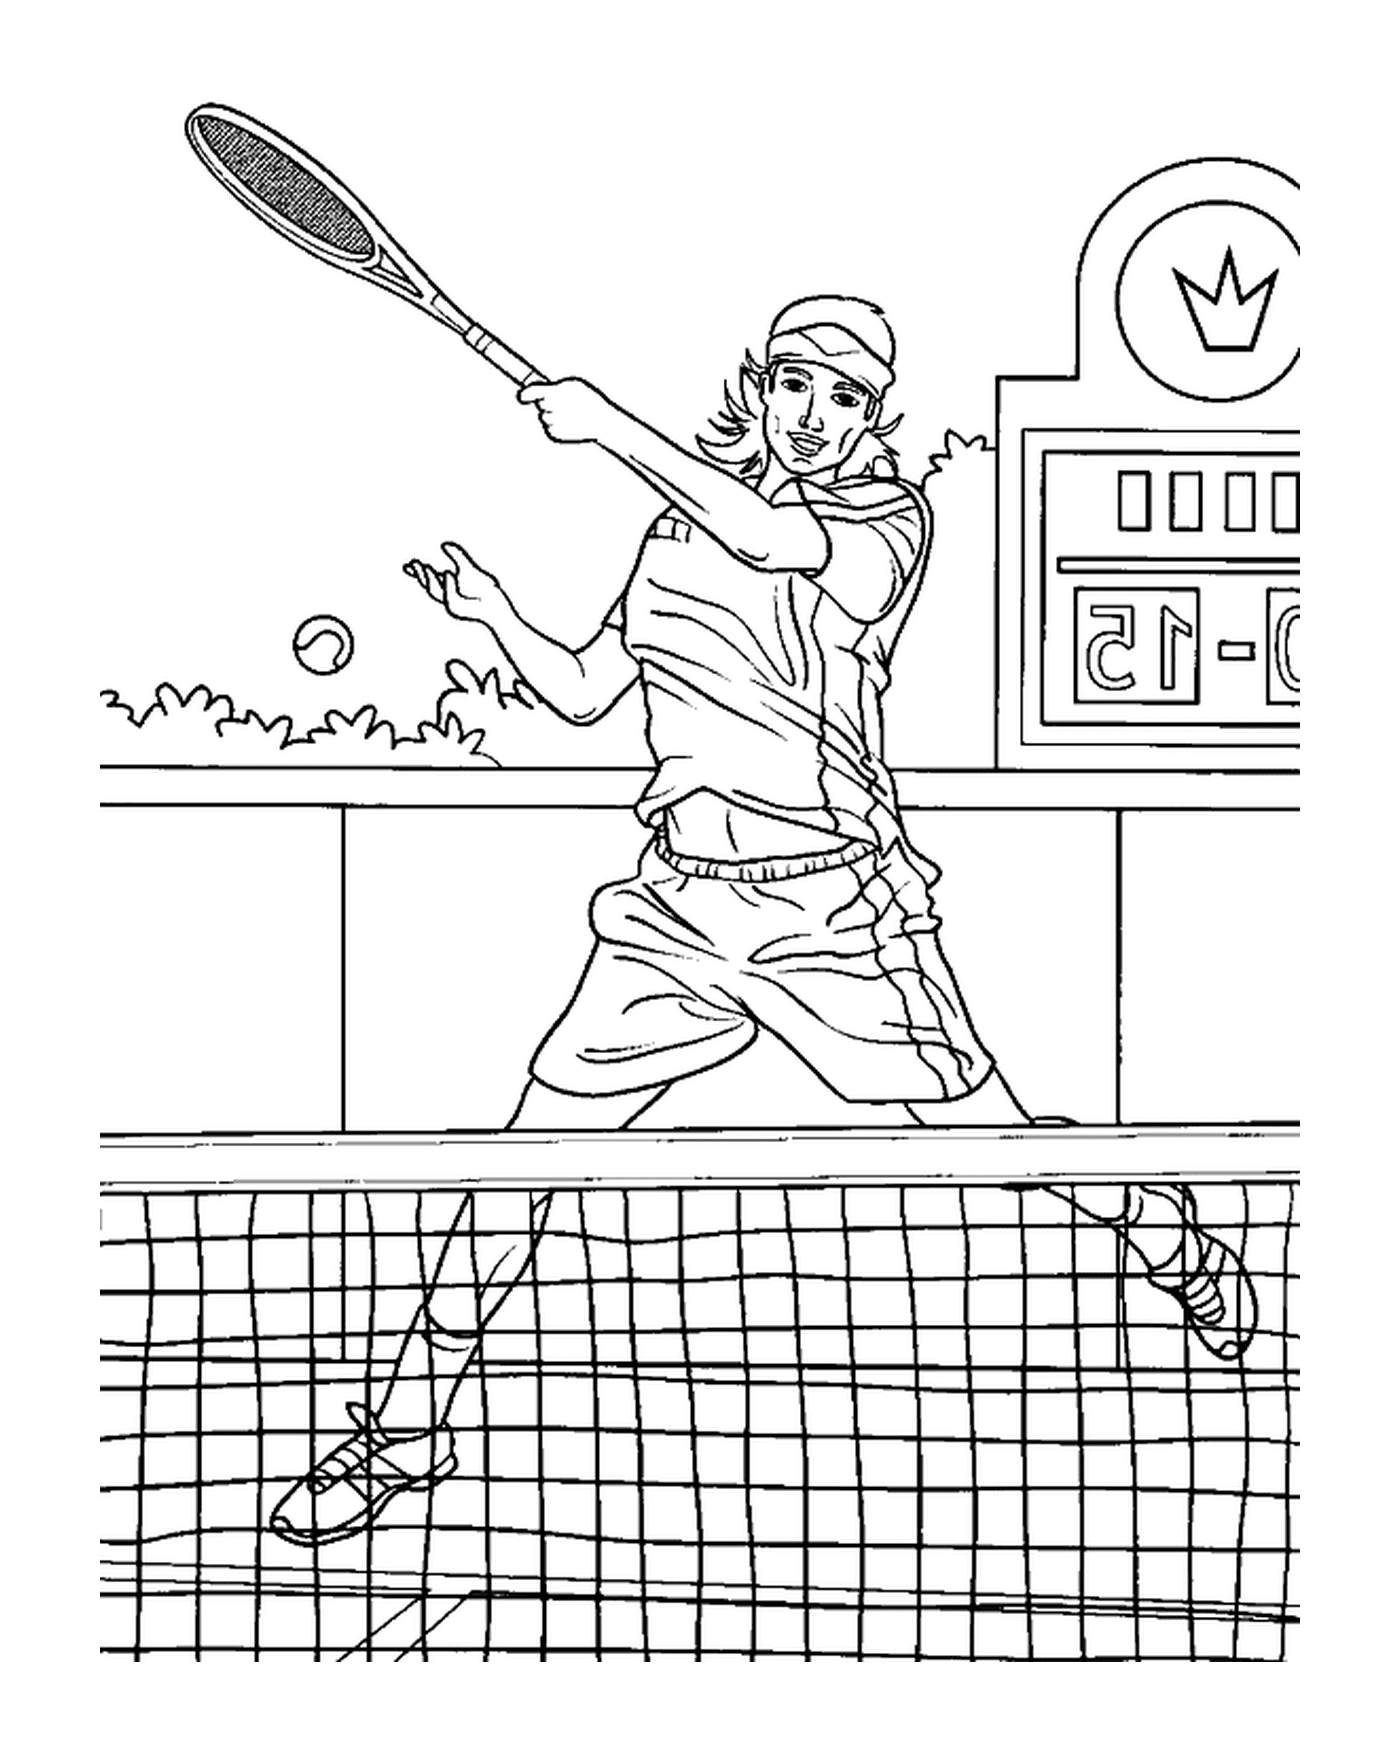  Um jogo de tênis animado 